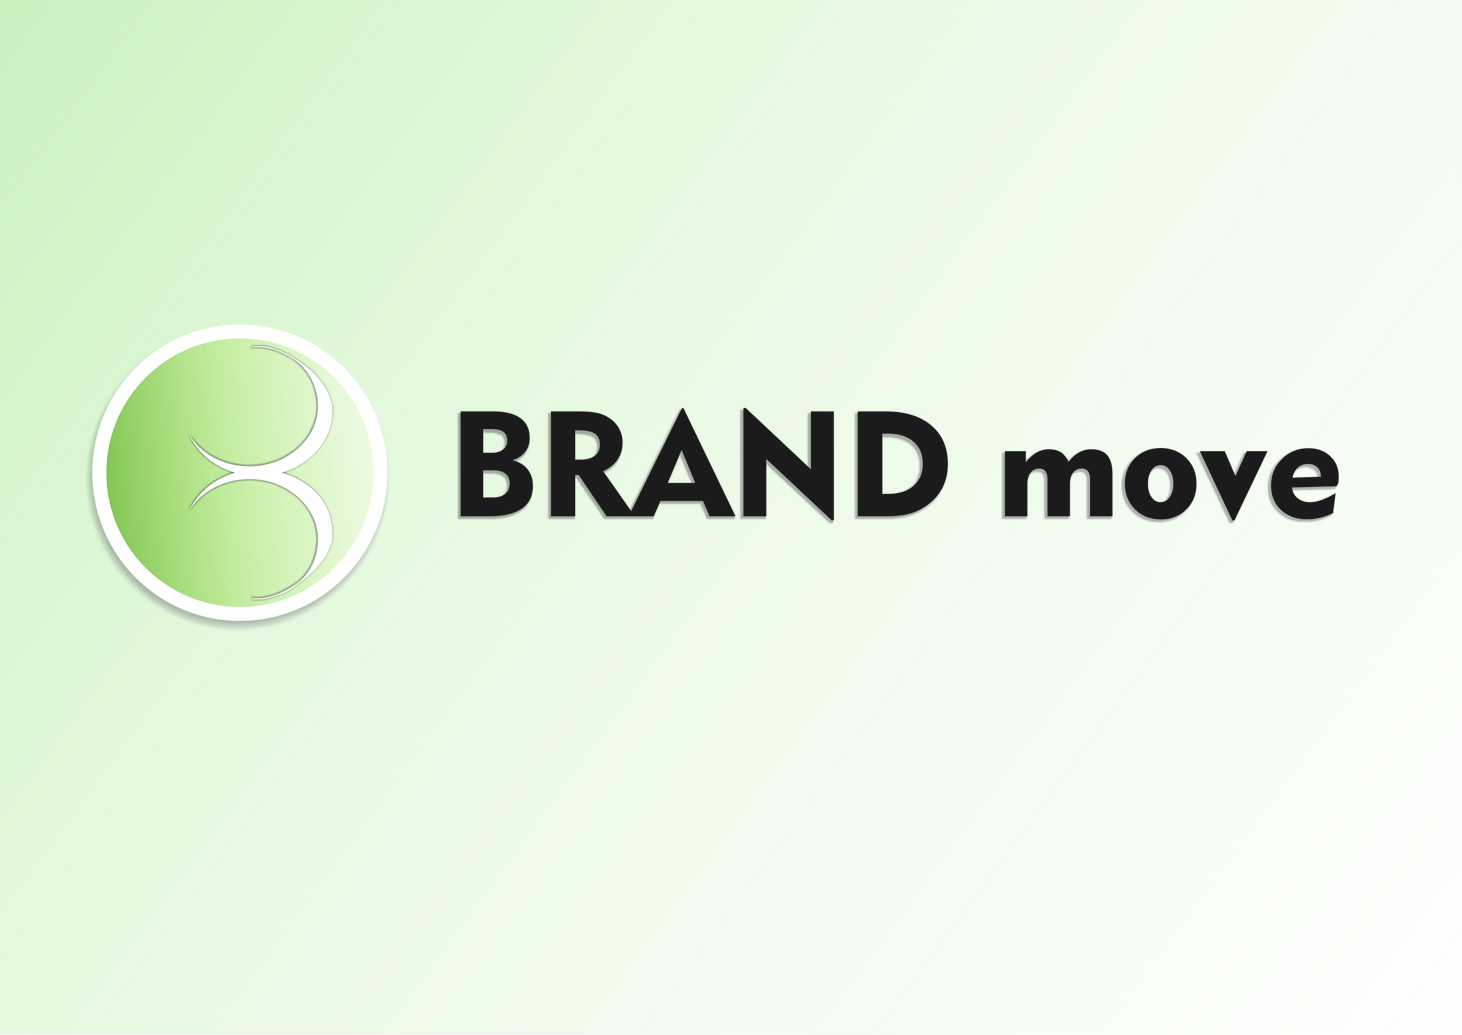 Brand move